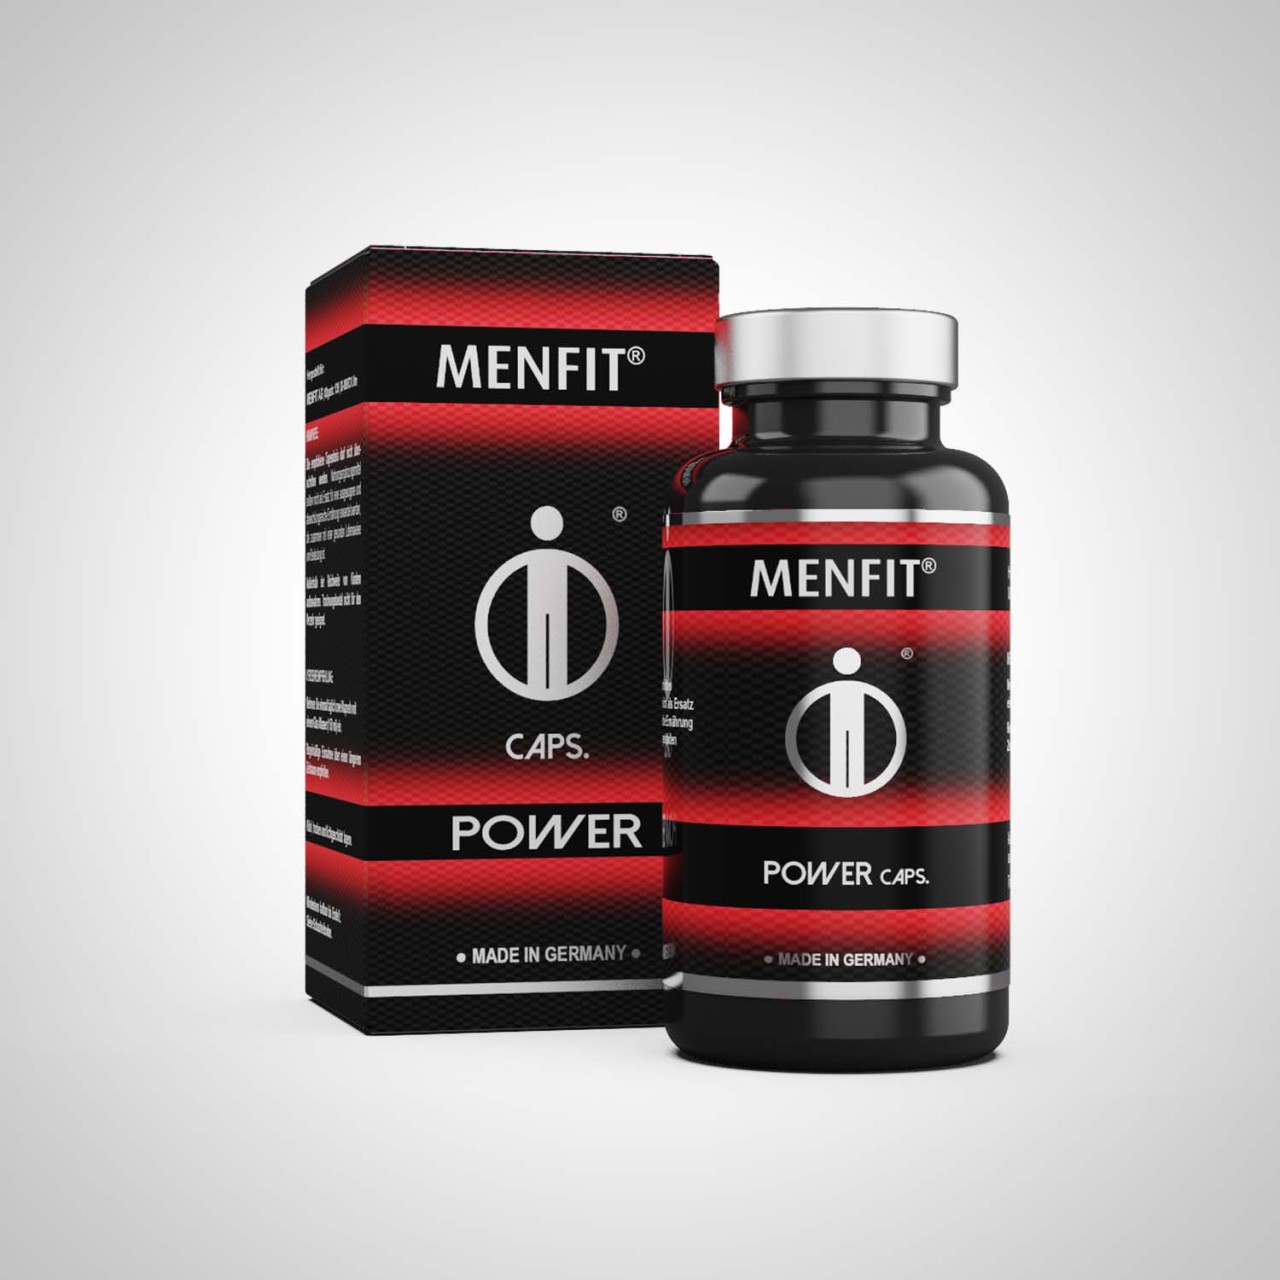 MENFIT® Power - kraftvoll & potent